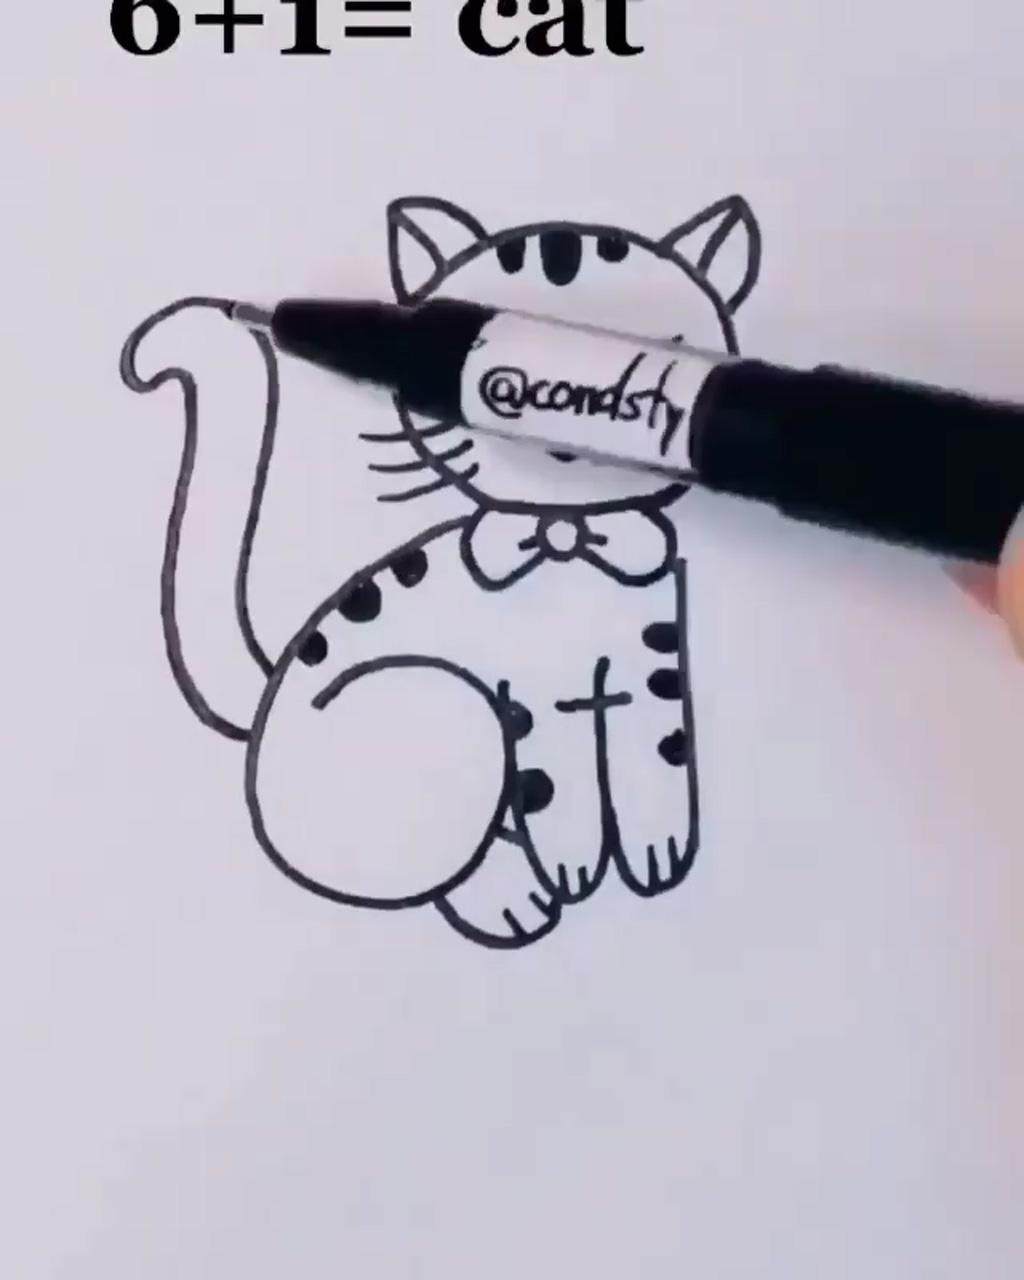 Cool pencil drawings; cute easy drawings